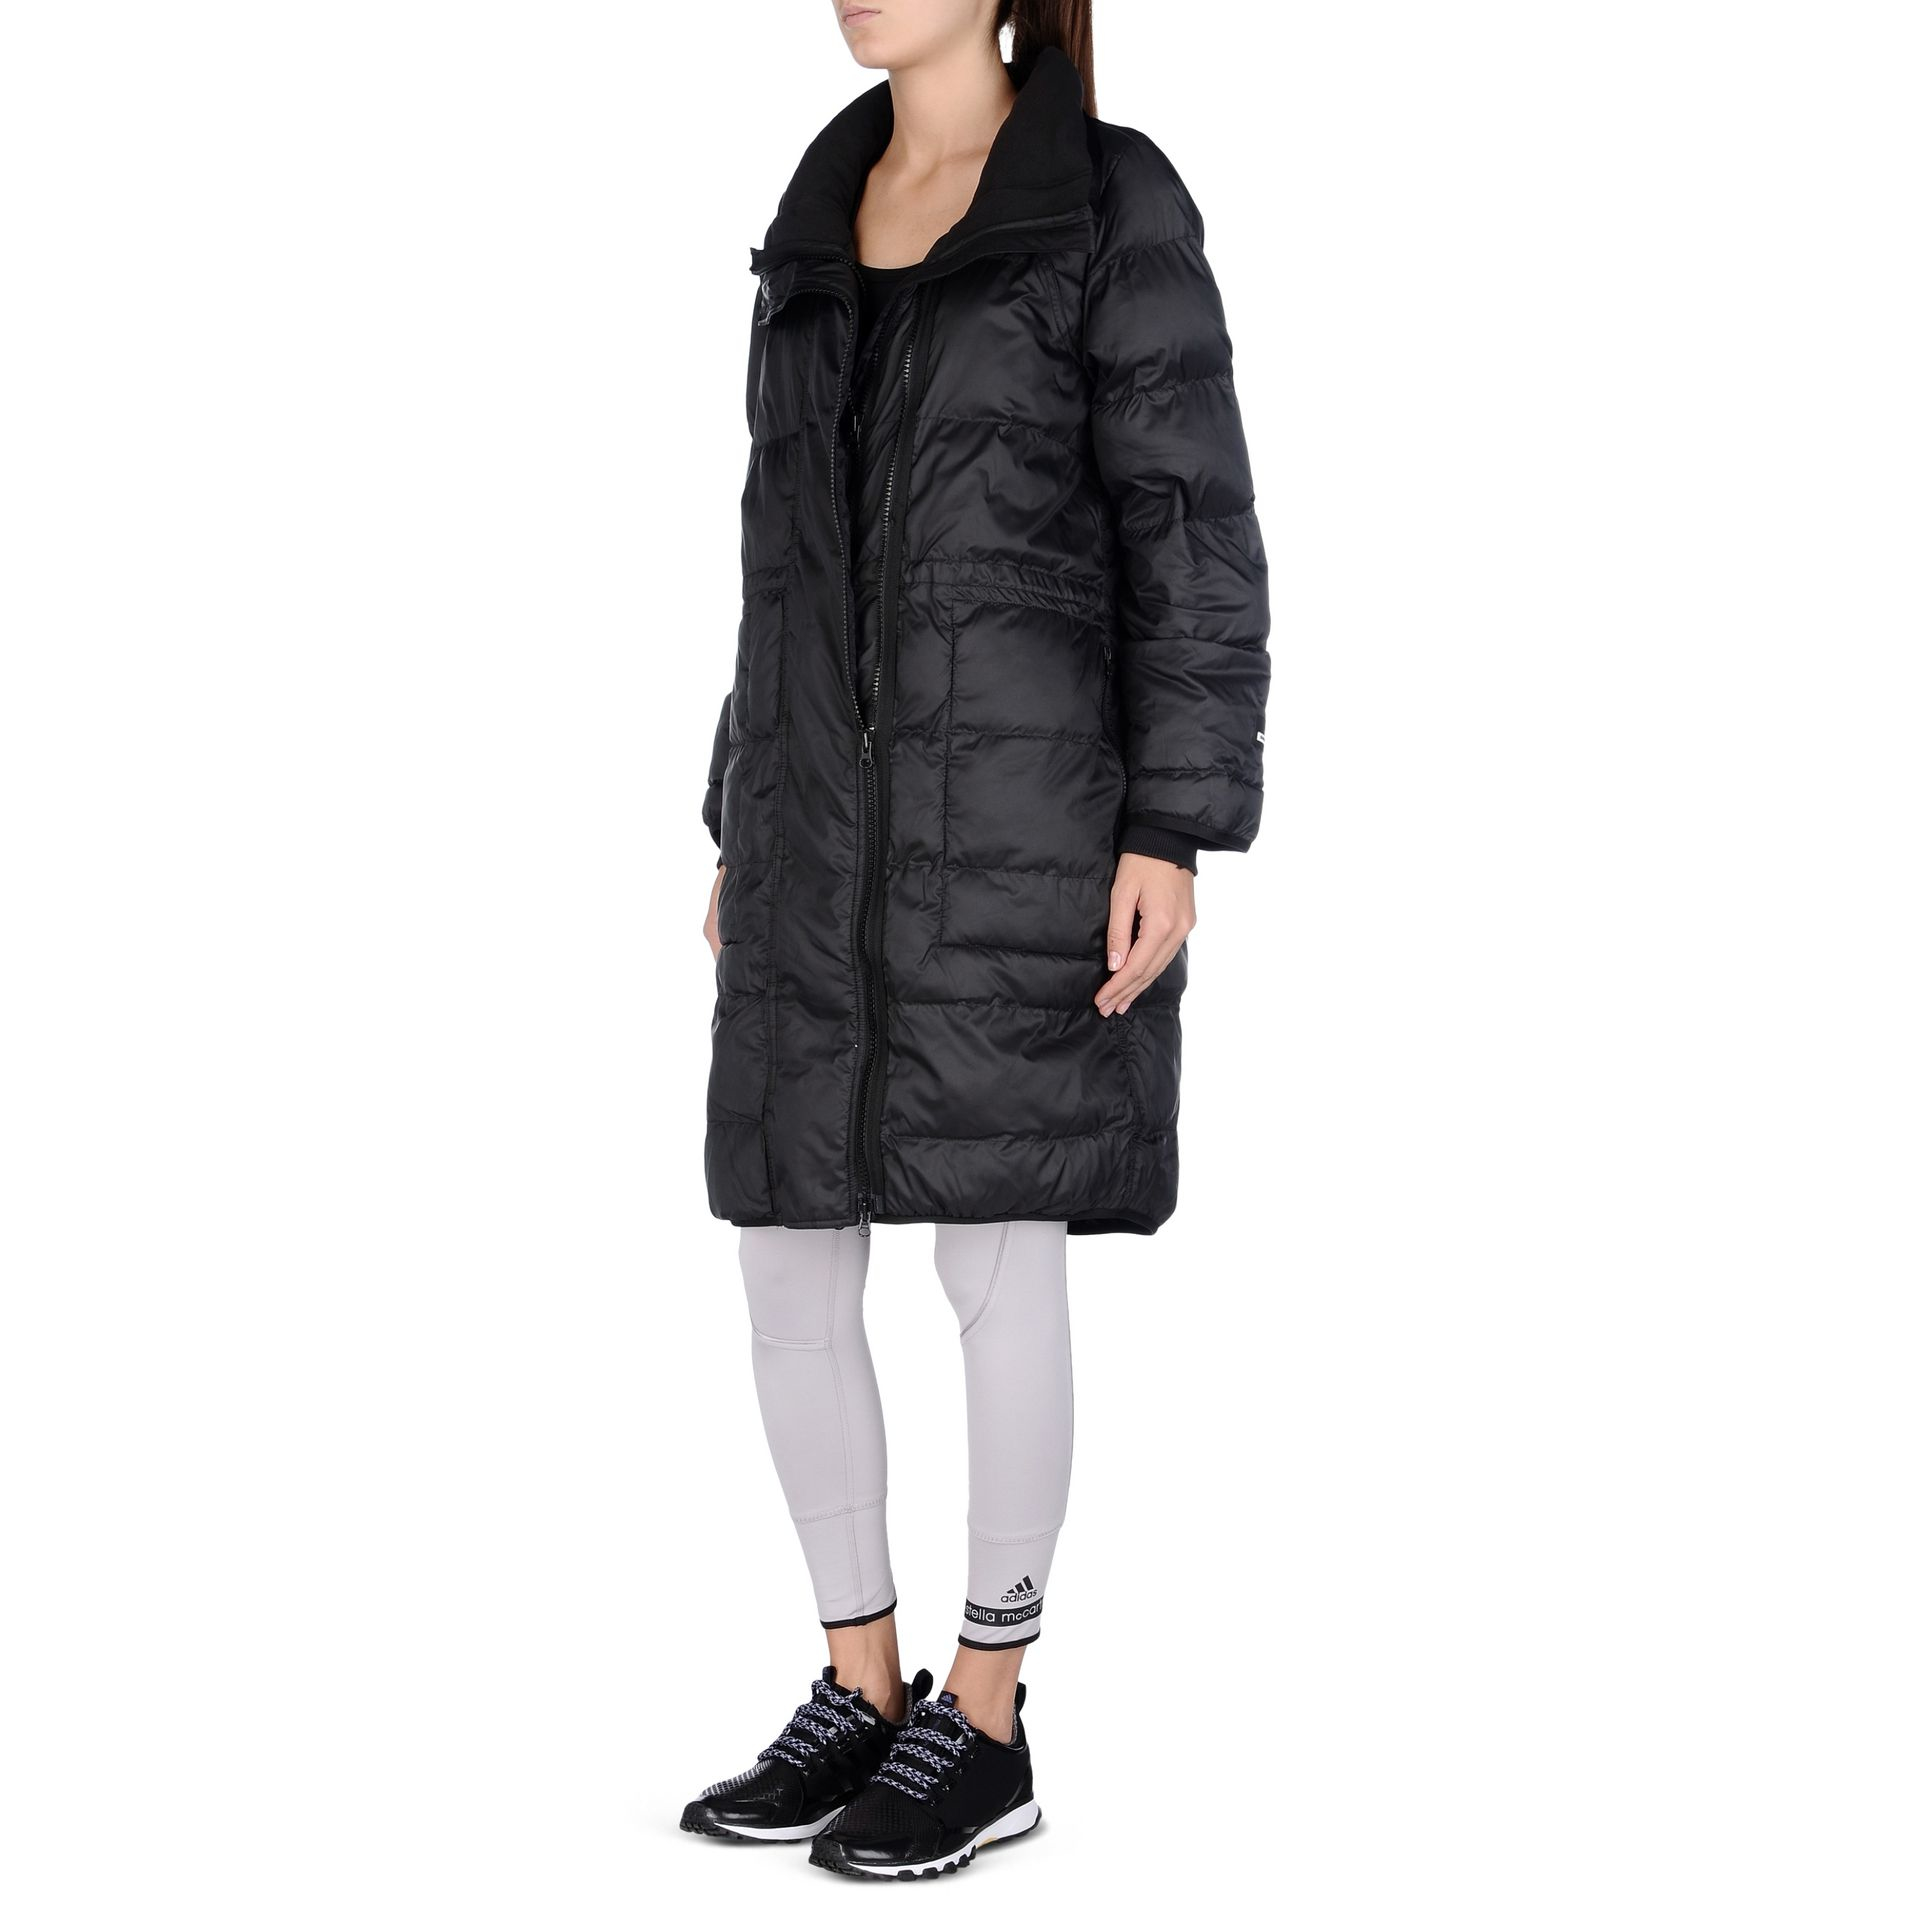 Lyst - Adidas By Stella Mccartney Essentials Long Padded Jacket in Black